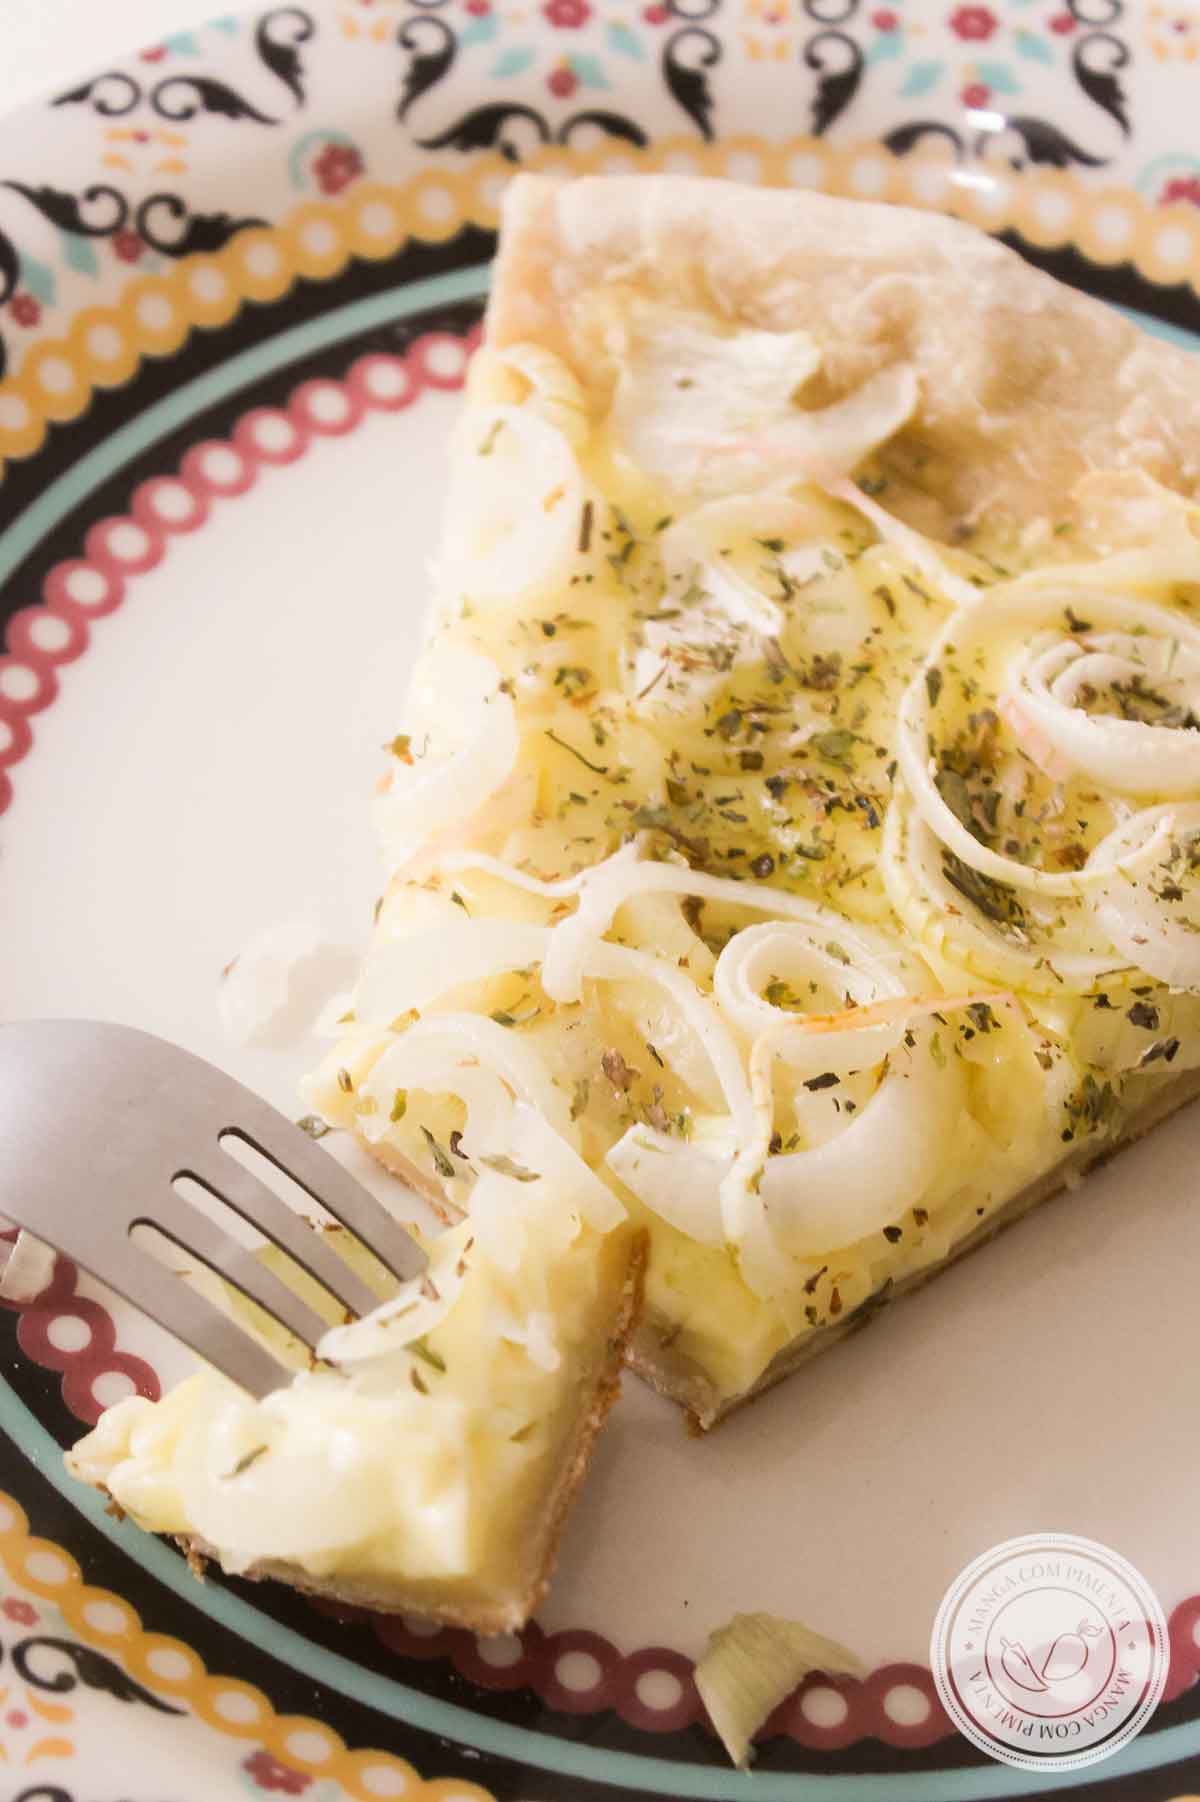 Receita de Fugazzeta - uma pizza argentina que leva muito queijo e cebola no seu preparo! 